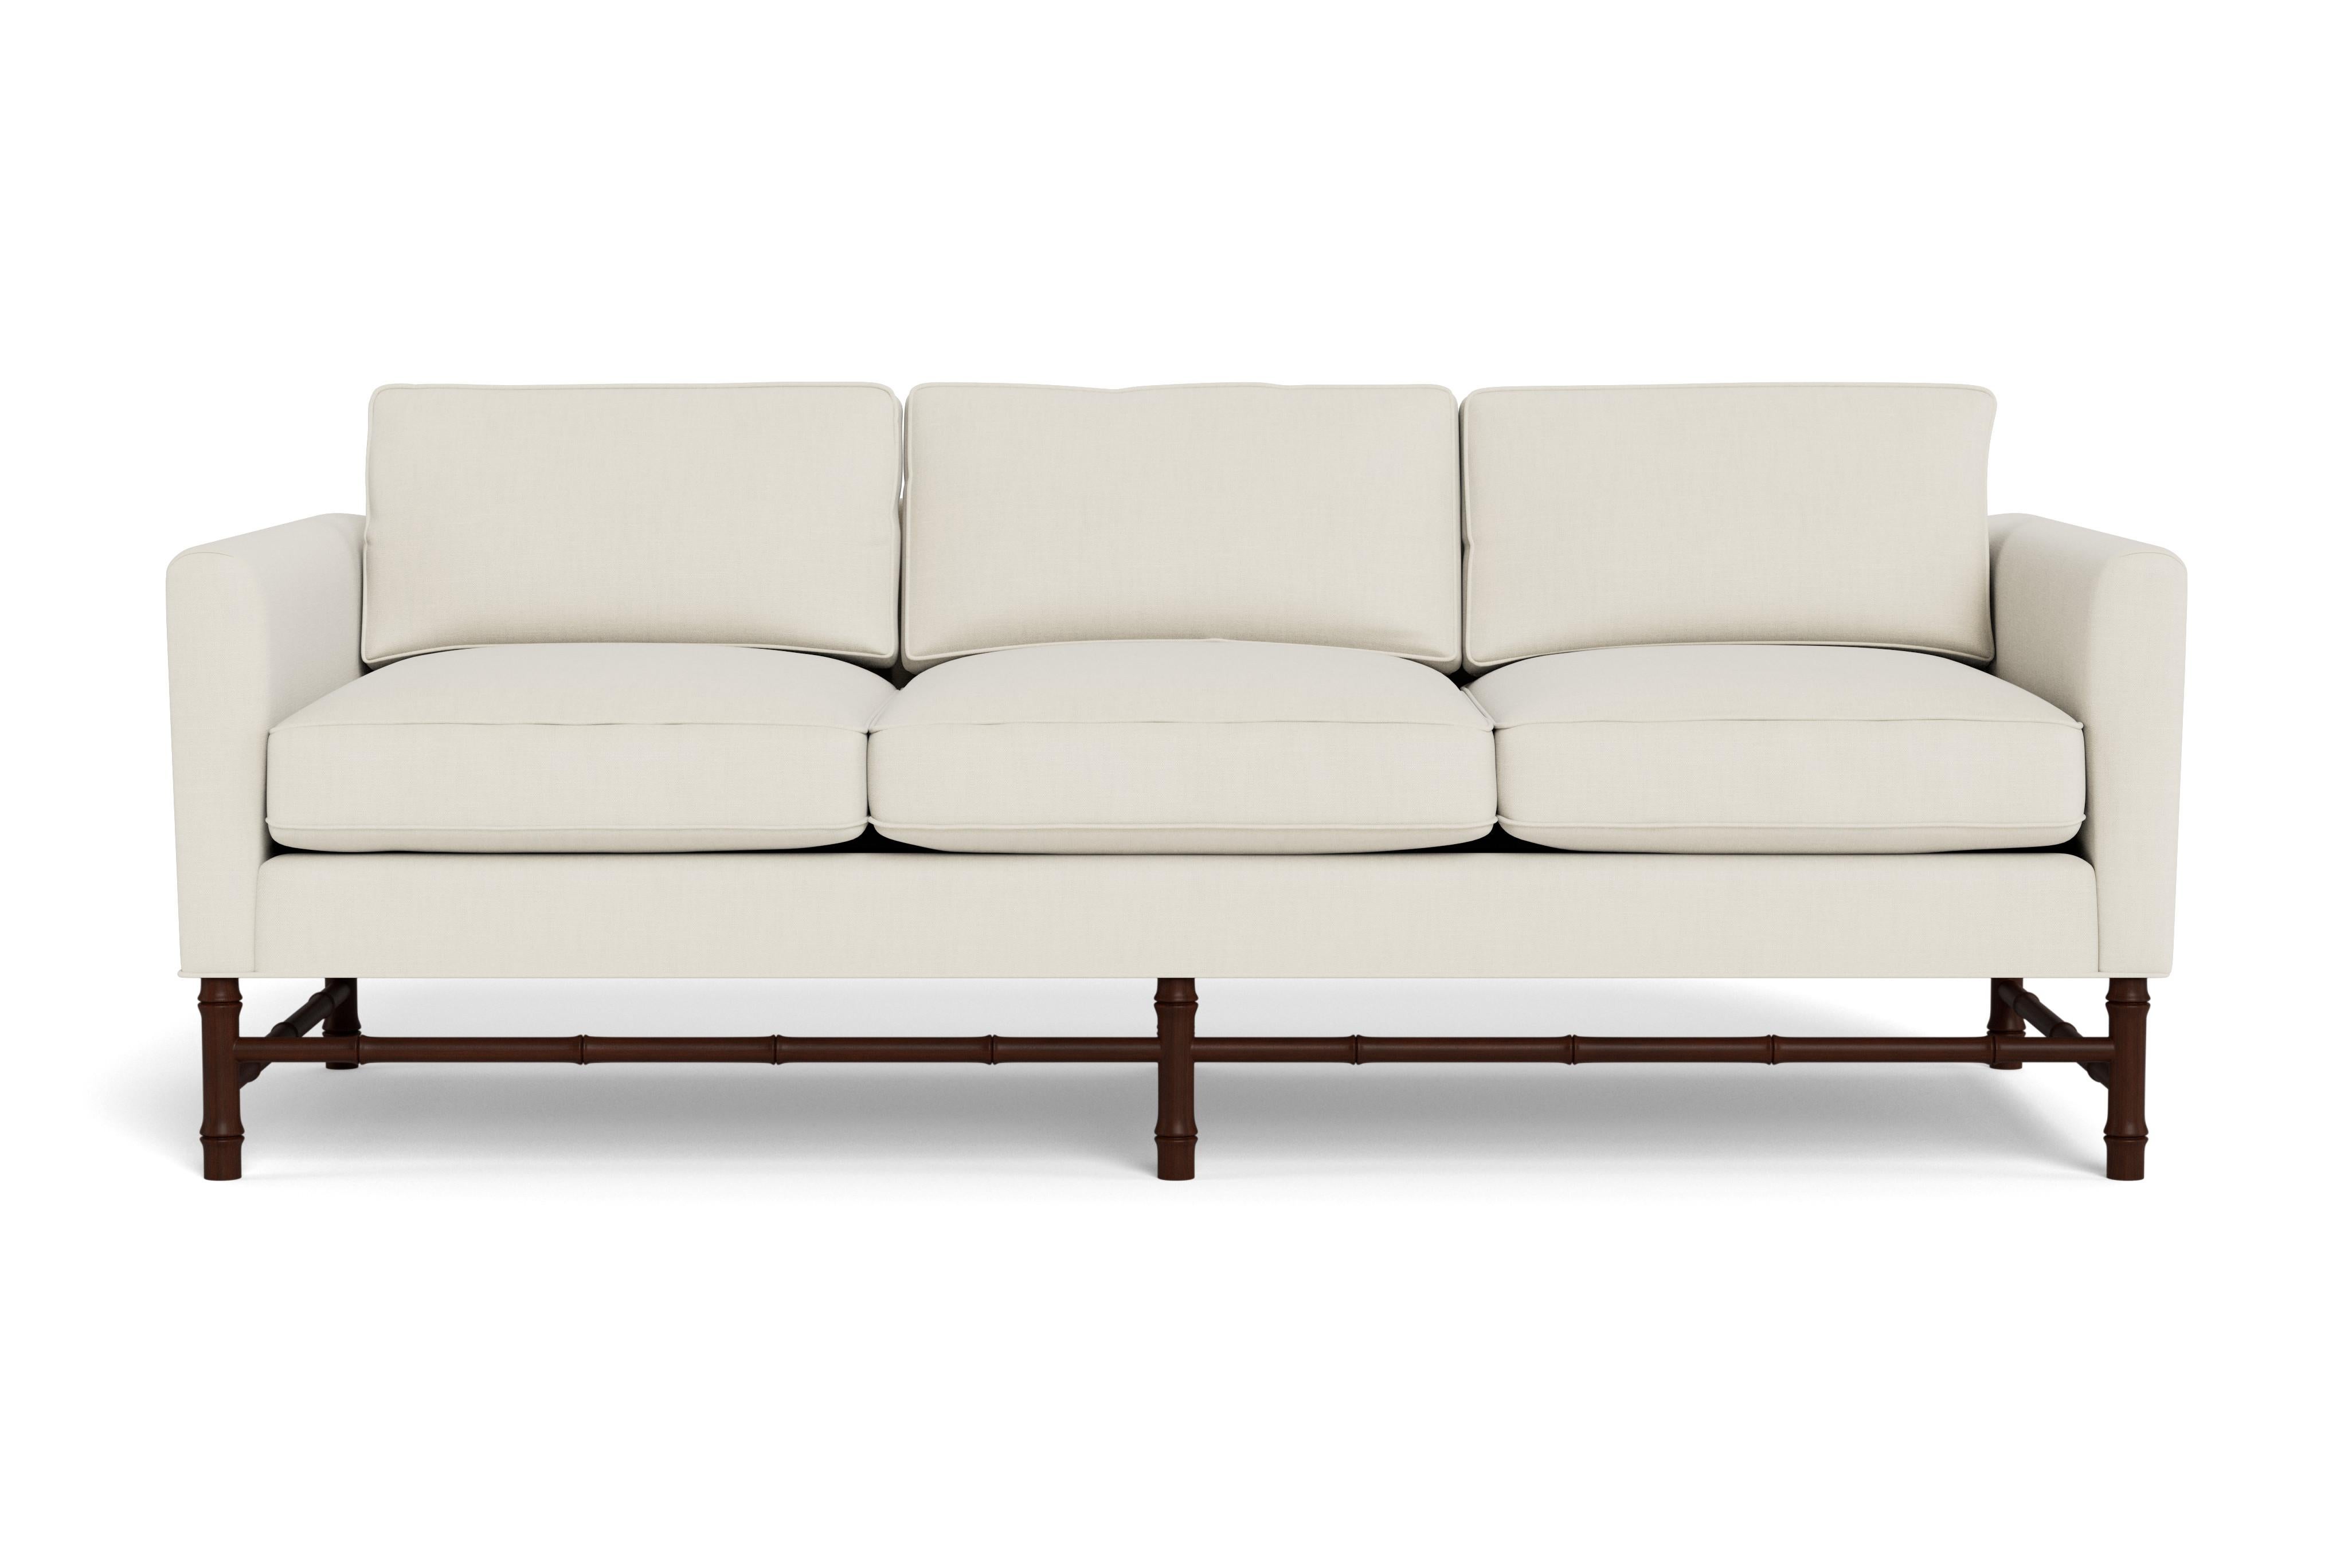 Dieses bequeme Sofa hat klassische, klare Linien, aber der Bambusfuß verleiht ihm Persönlichkeit. Perfekt für jeden Einrichtungsstil.  Auf Bestellung mit mahagonigebeiztem Untergestell und unserem cremefarbenen Hochleistungsleinen, einem